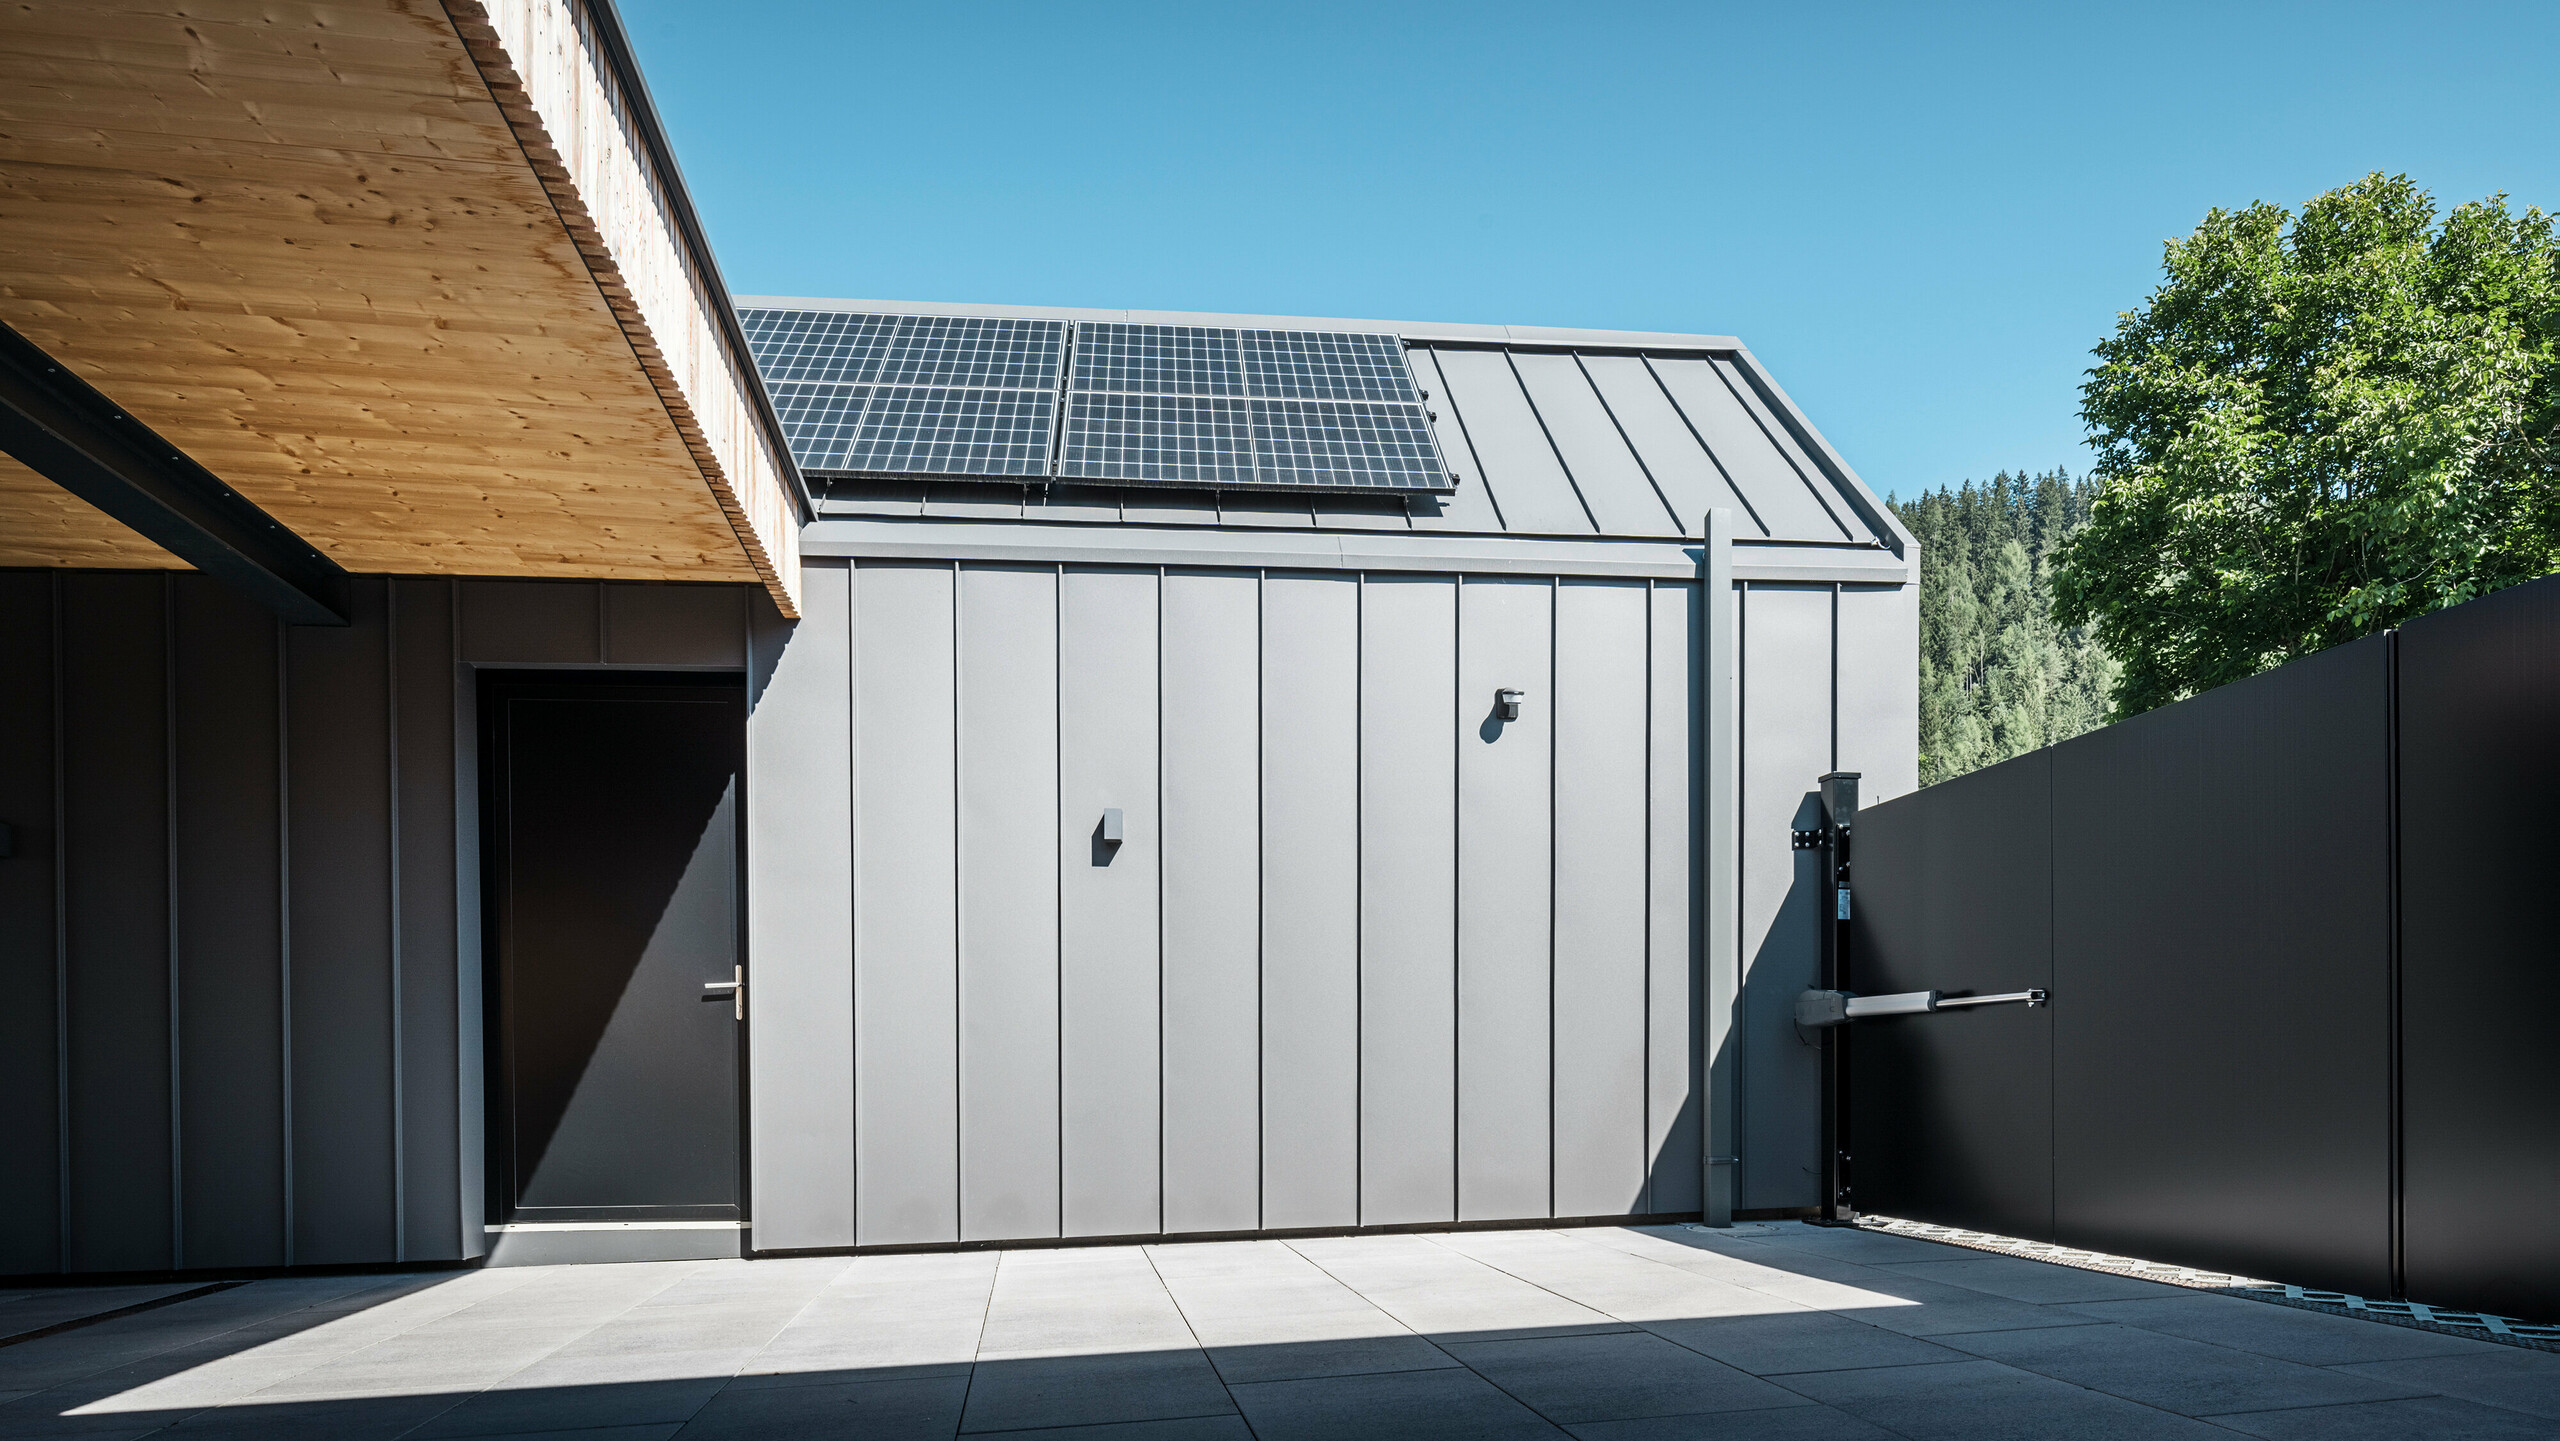 Moderná príjazdová cesta k rodinnému domu v rakúskom Pogieri, ktorý sa vyznačuje jasnými líniami a kvalitnými materiálmi. Plášť budovy je opláštený zvitkovým plechom PREFALZ vo farbe P.10 tmavošedá a tvorí s posuvnou bránou estetický celok. Fotovoltický systém na streche, namontovaný so solárnou nosnou konštrukciou PREFA, podčiarkuje ekologickú orientáciu budovy. Prírodný drevený prelis kontrastuje s moderným kovom a podčiarkuje spojenie tradície a pokroku v architektúre.